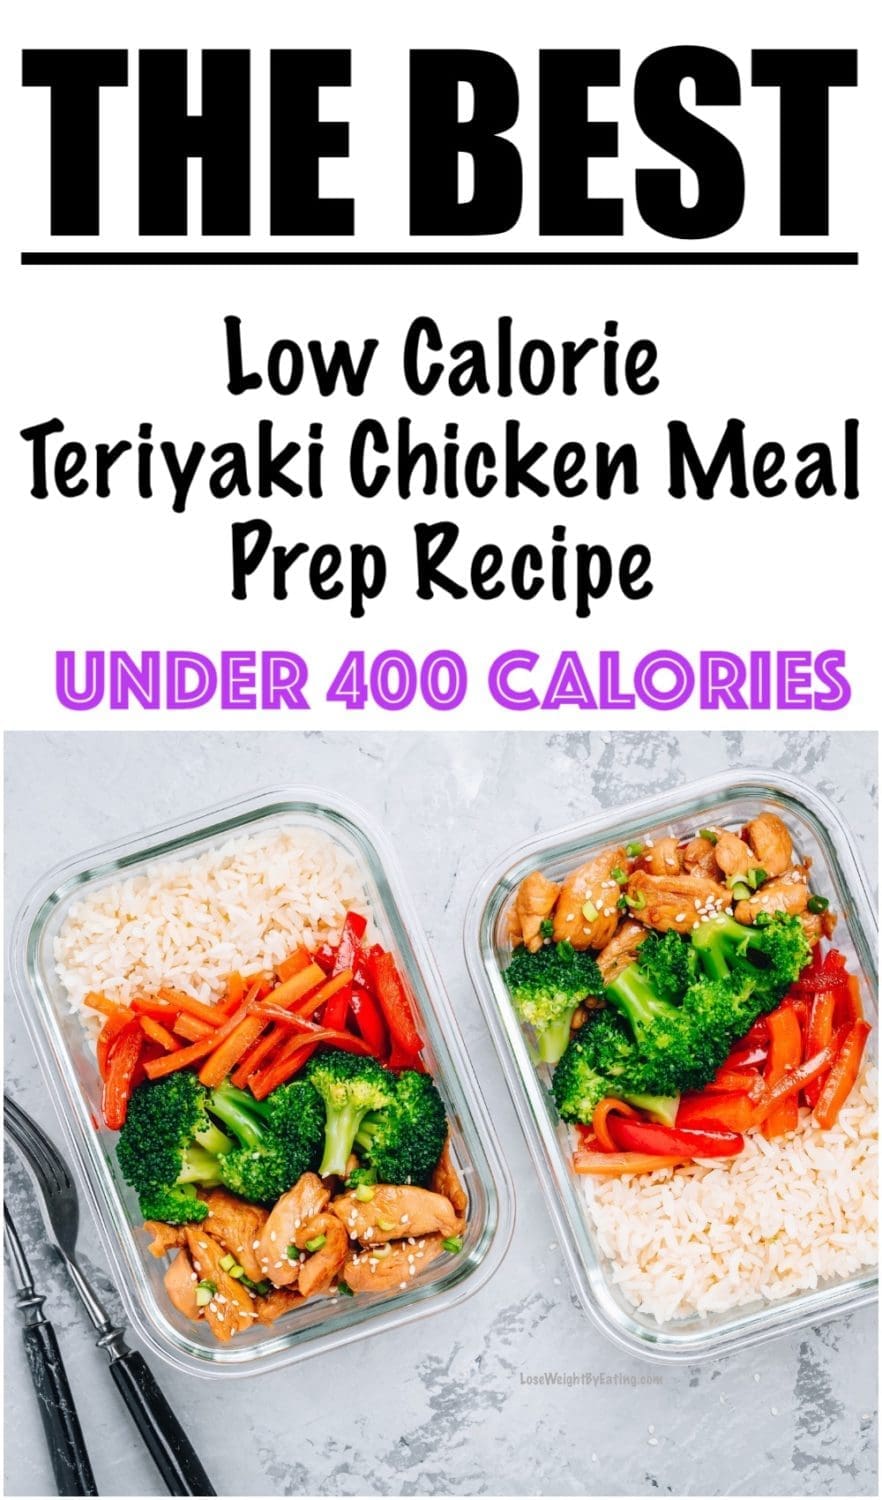 Teriyaki Chicken Meal Prep Recipe